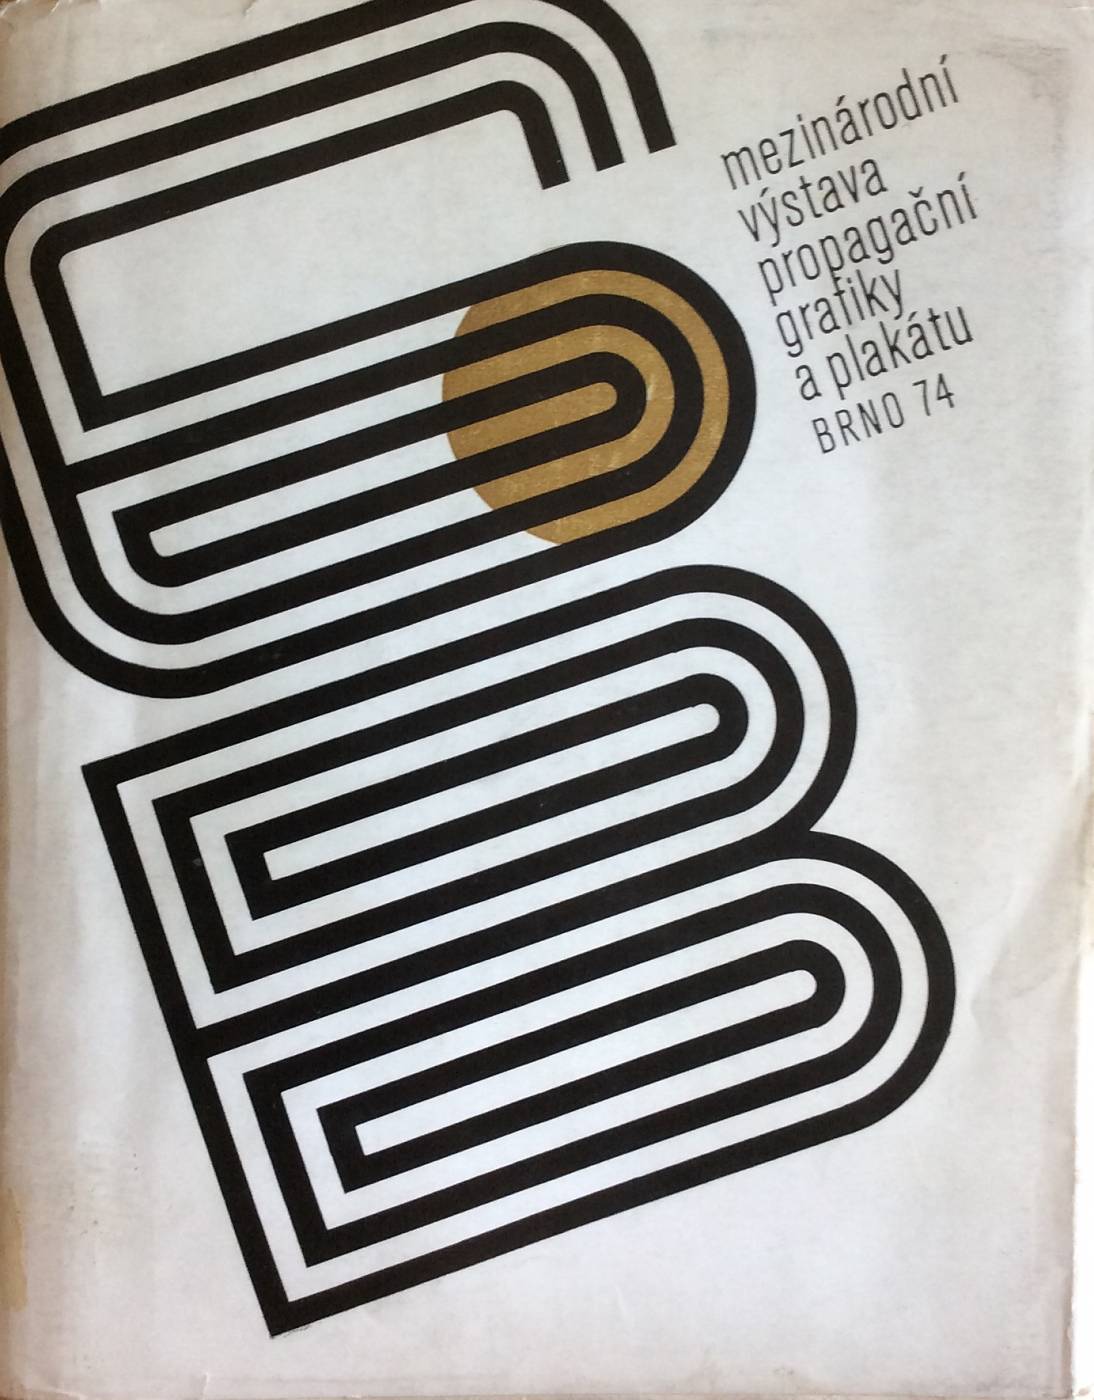 VI. Bienále užité grafiky Brno 1974 – Mezinárodní výstava propagační grafiky a plakátu